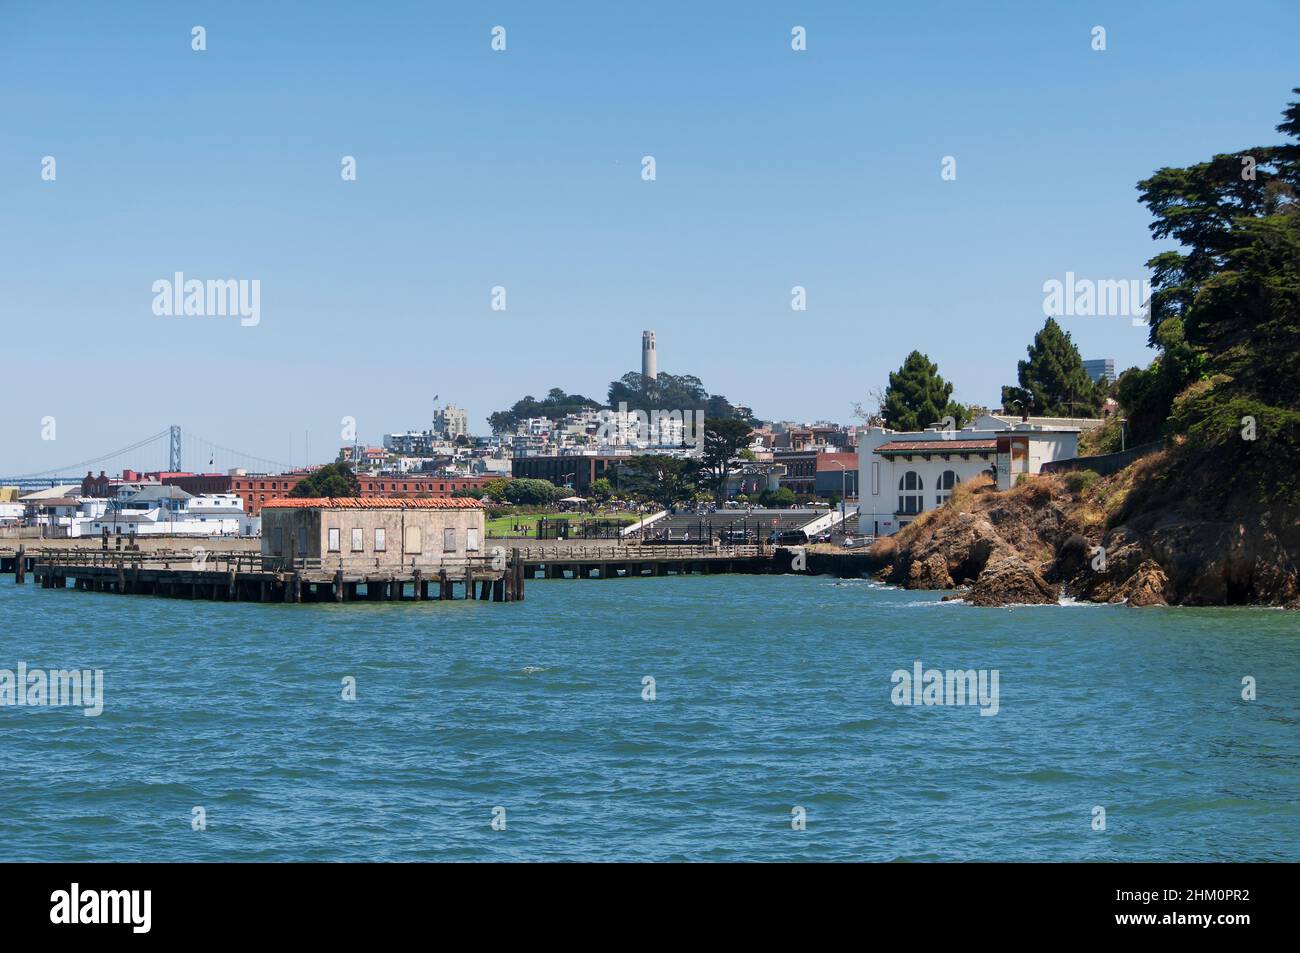 Allgemeine Architektur in der Fort Maurer Gegend von San Francisco mit Blick auf die Bay Bridge und Telegraph Hill an einem sonnigen klaren Himmel in kalifornien. Stockfoto